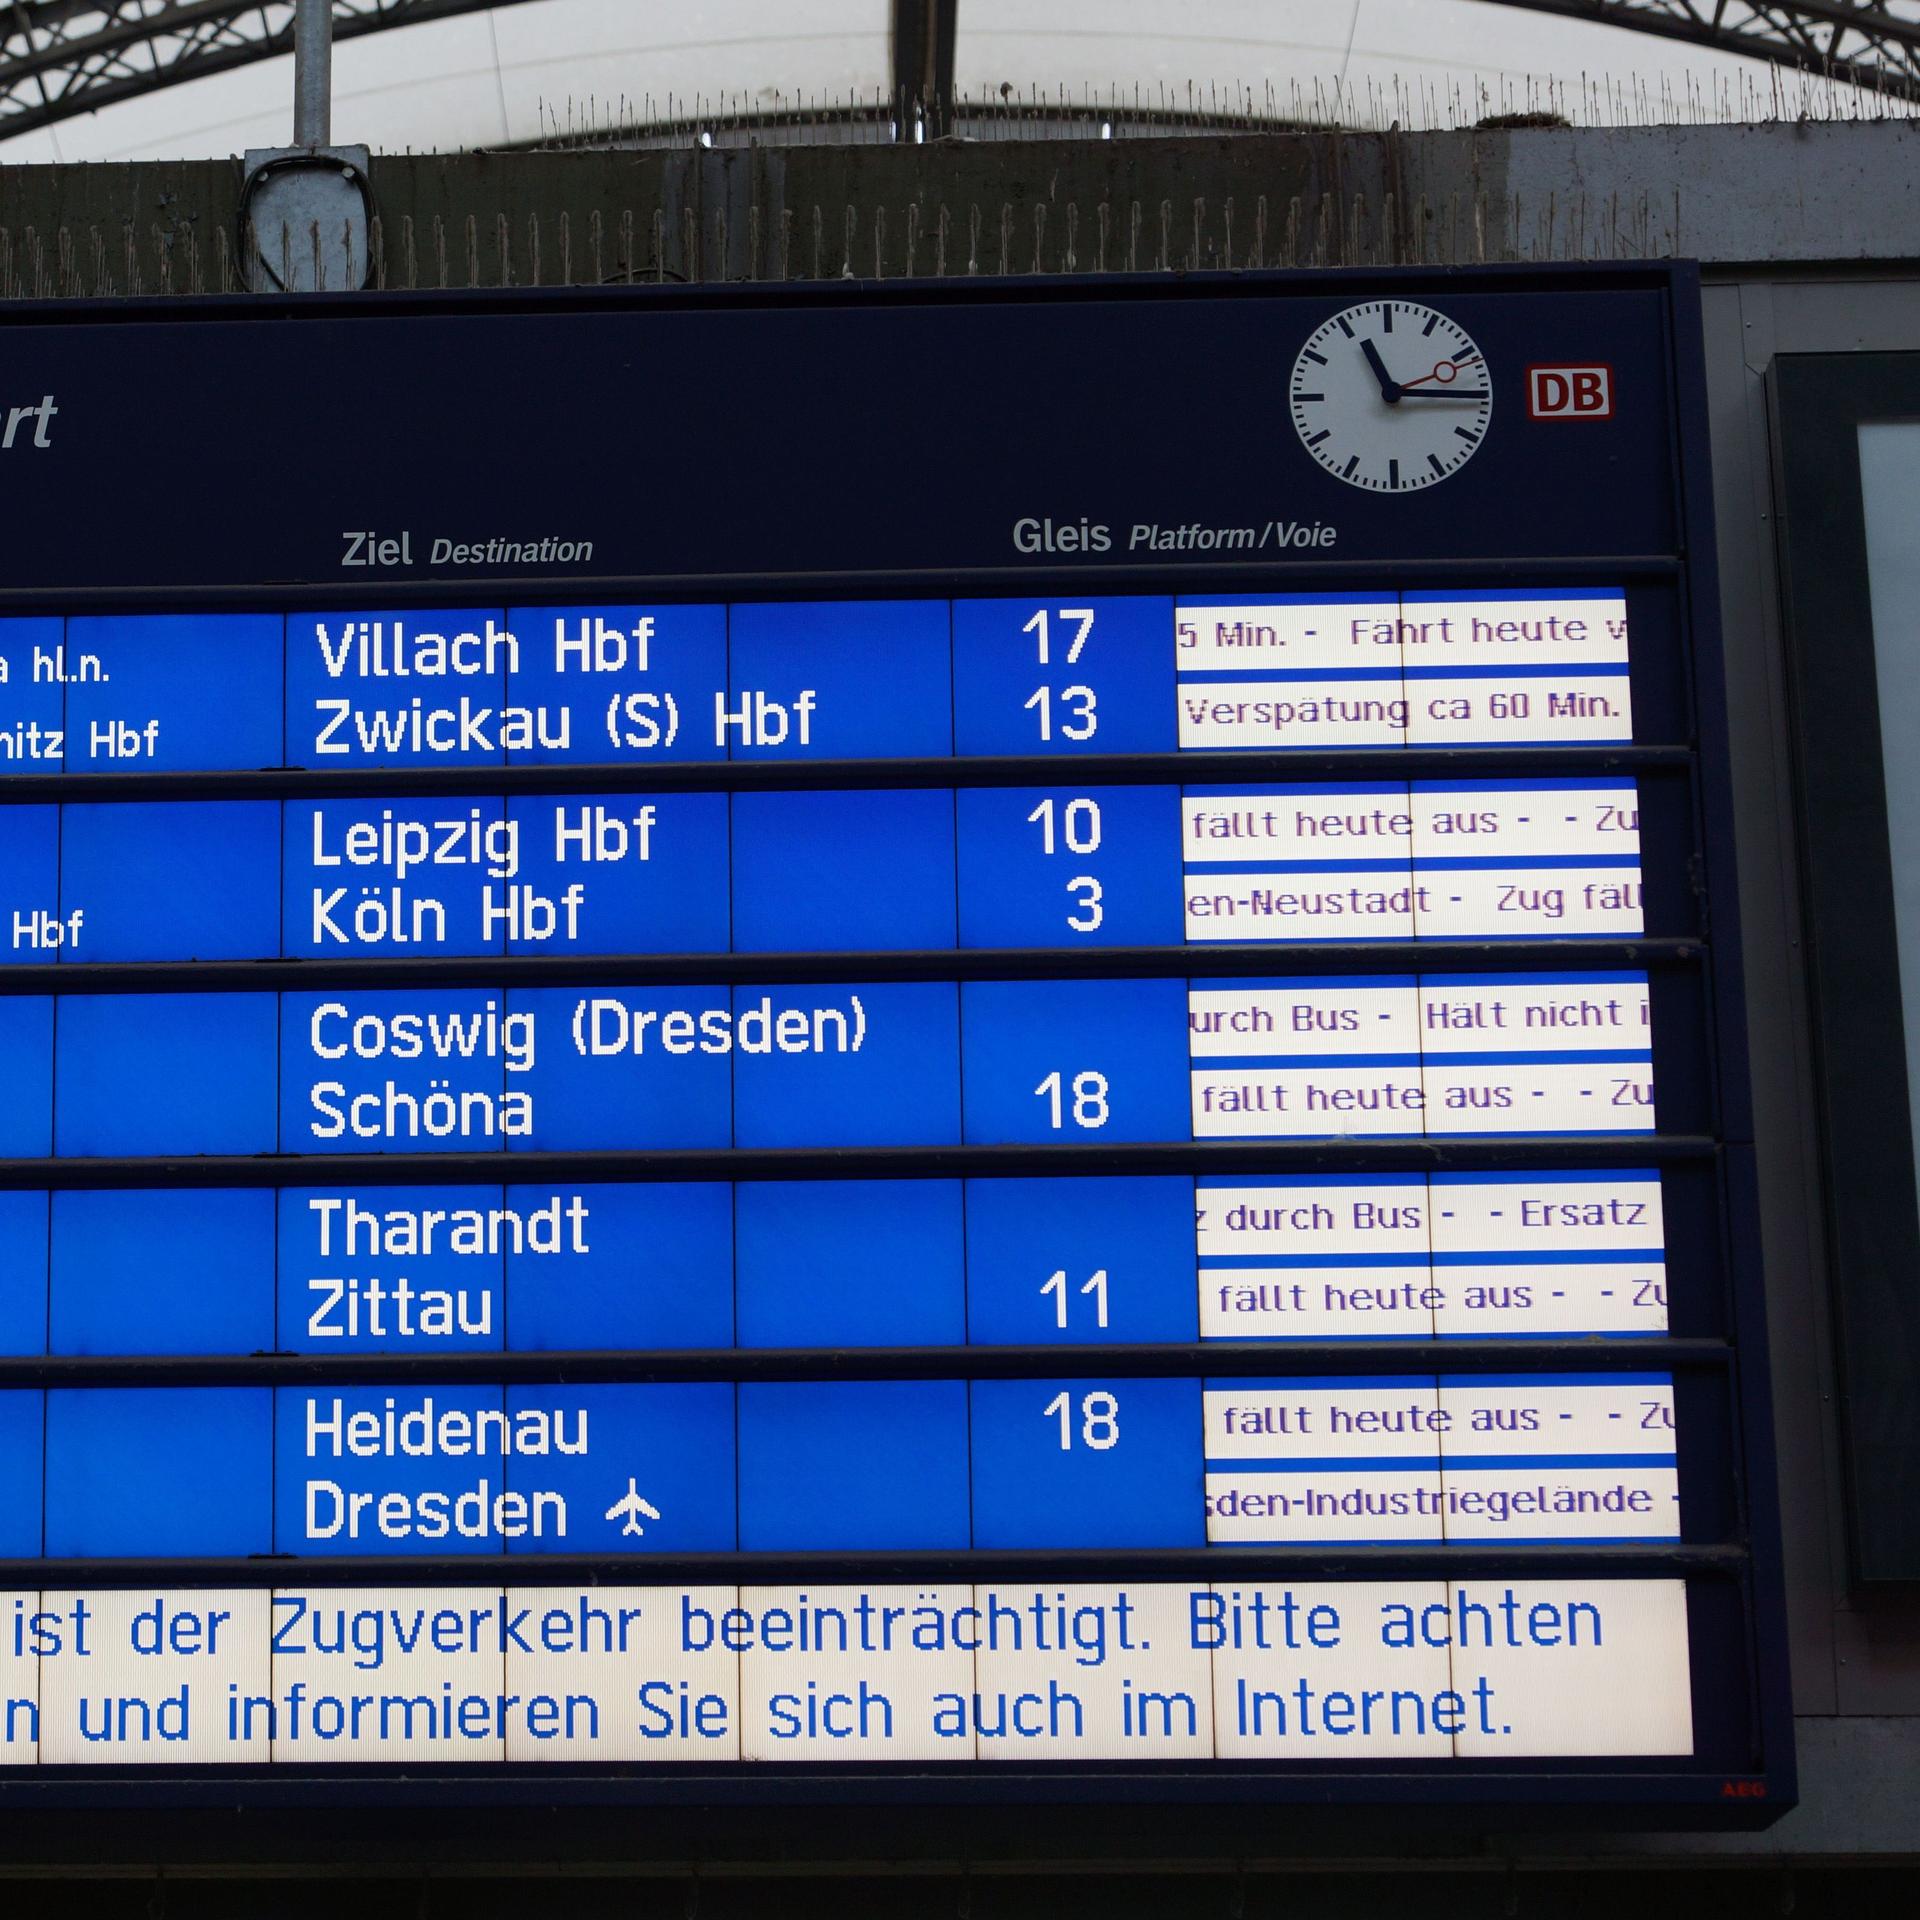 Eine Anzeigetafel auf einem Bahnhof, mit dem inweis auf einen Bahnstreik der GDL und Zugausfällen.